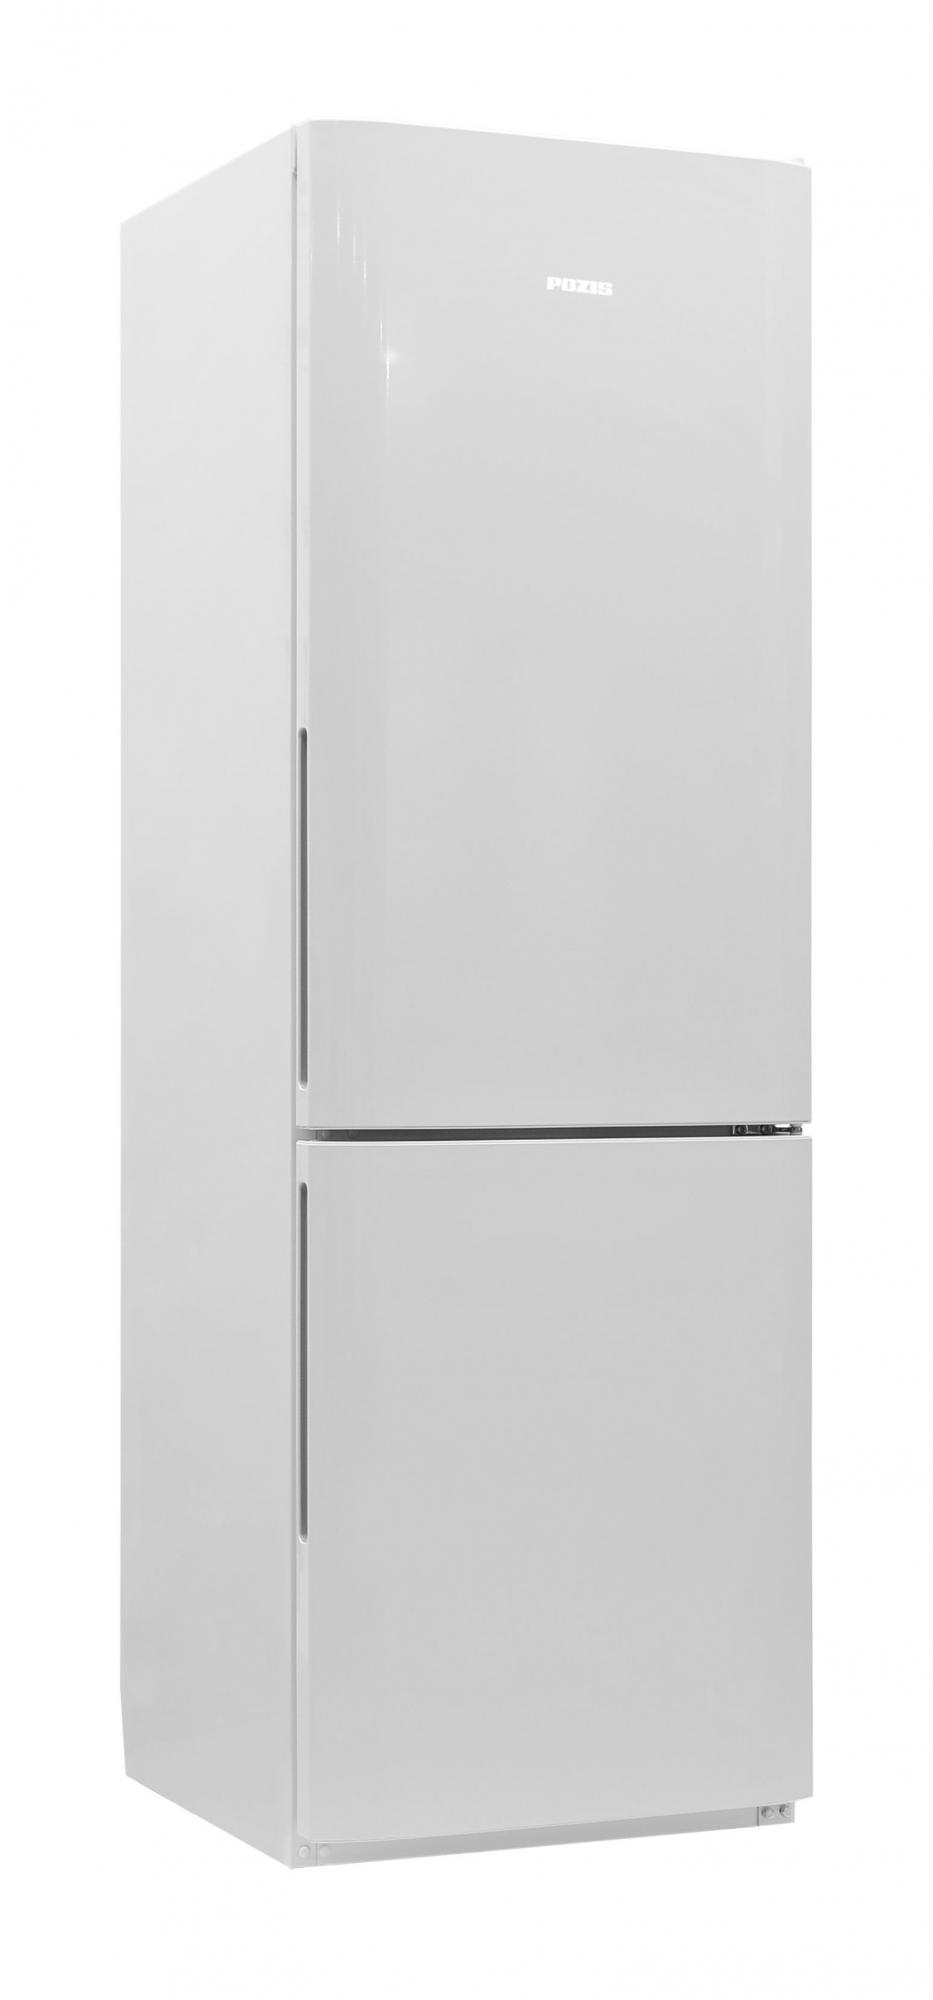 Холодильник POZIS RK FNF-170 серебристый																		 — описание, фото, цены в интернет-магазине Премьер Техно